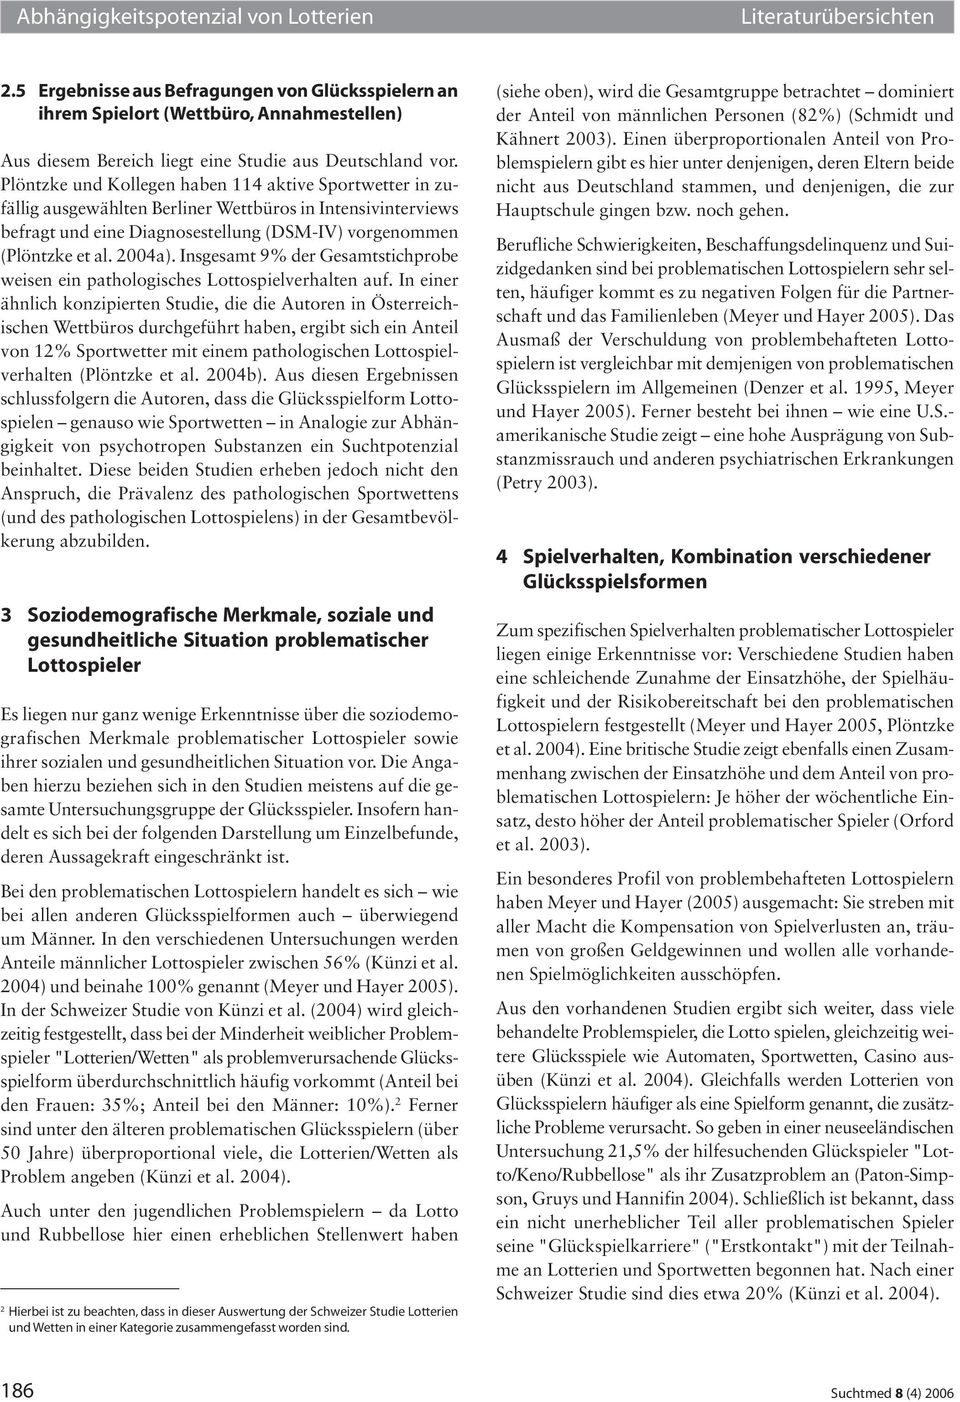 Plöntzke und Kollegen haben 114 aktive Sportwetter in zufällig ausgewählten Berliner Wettbüros in Intensivinterviews befragt und eine Diagnosestellung (DSM-IV) vorgenommen (Plöntzke et al. 2004a).